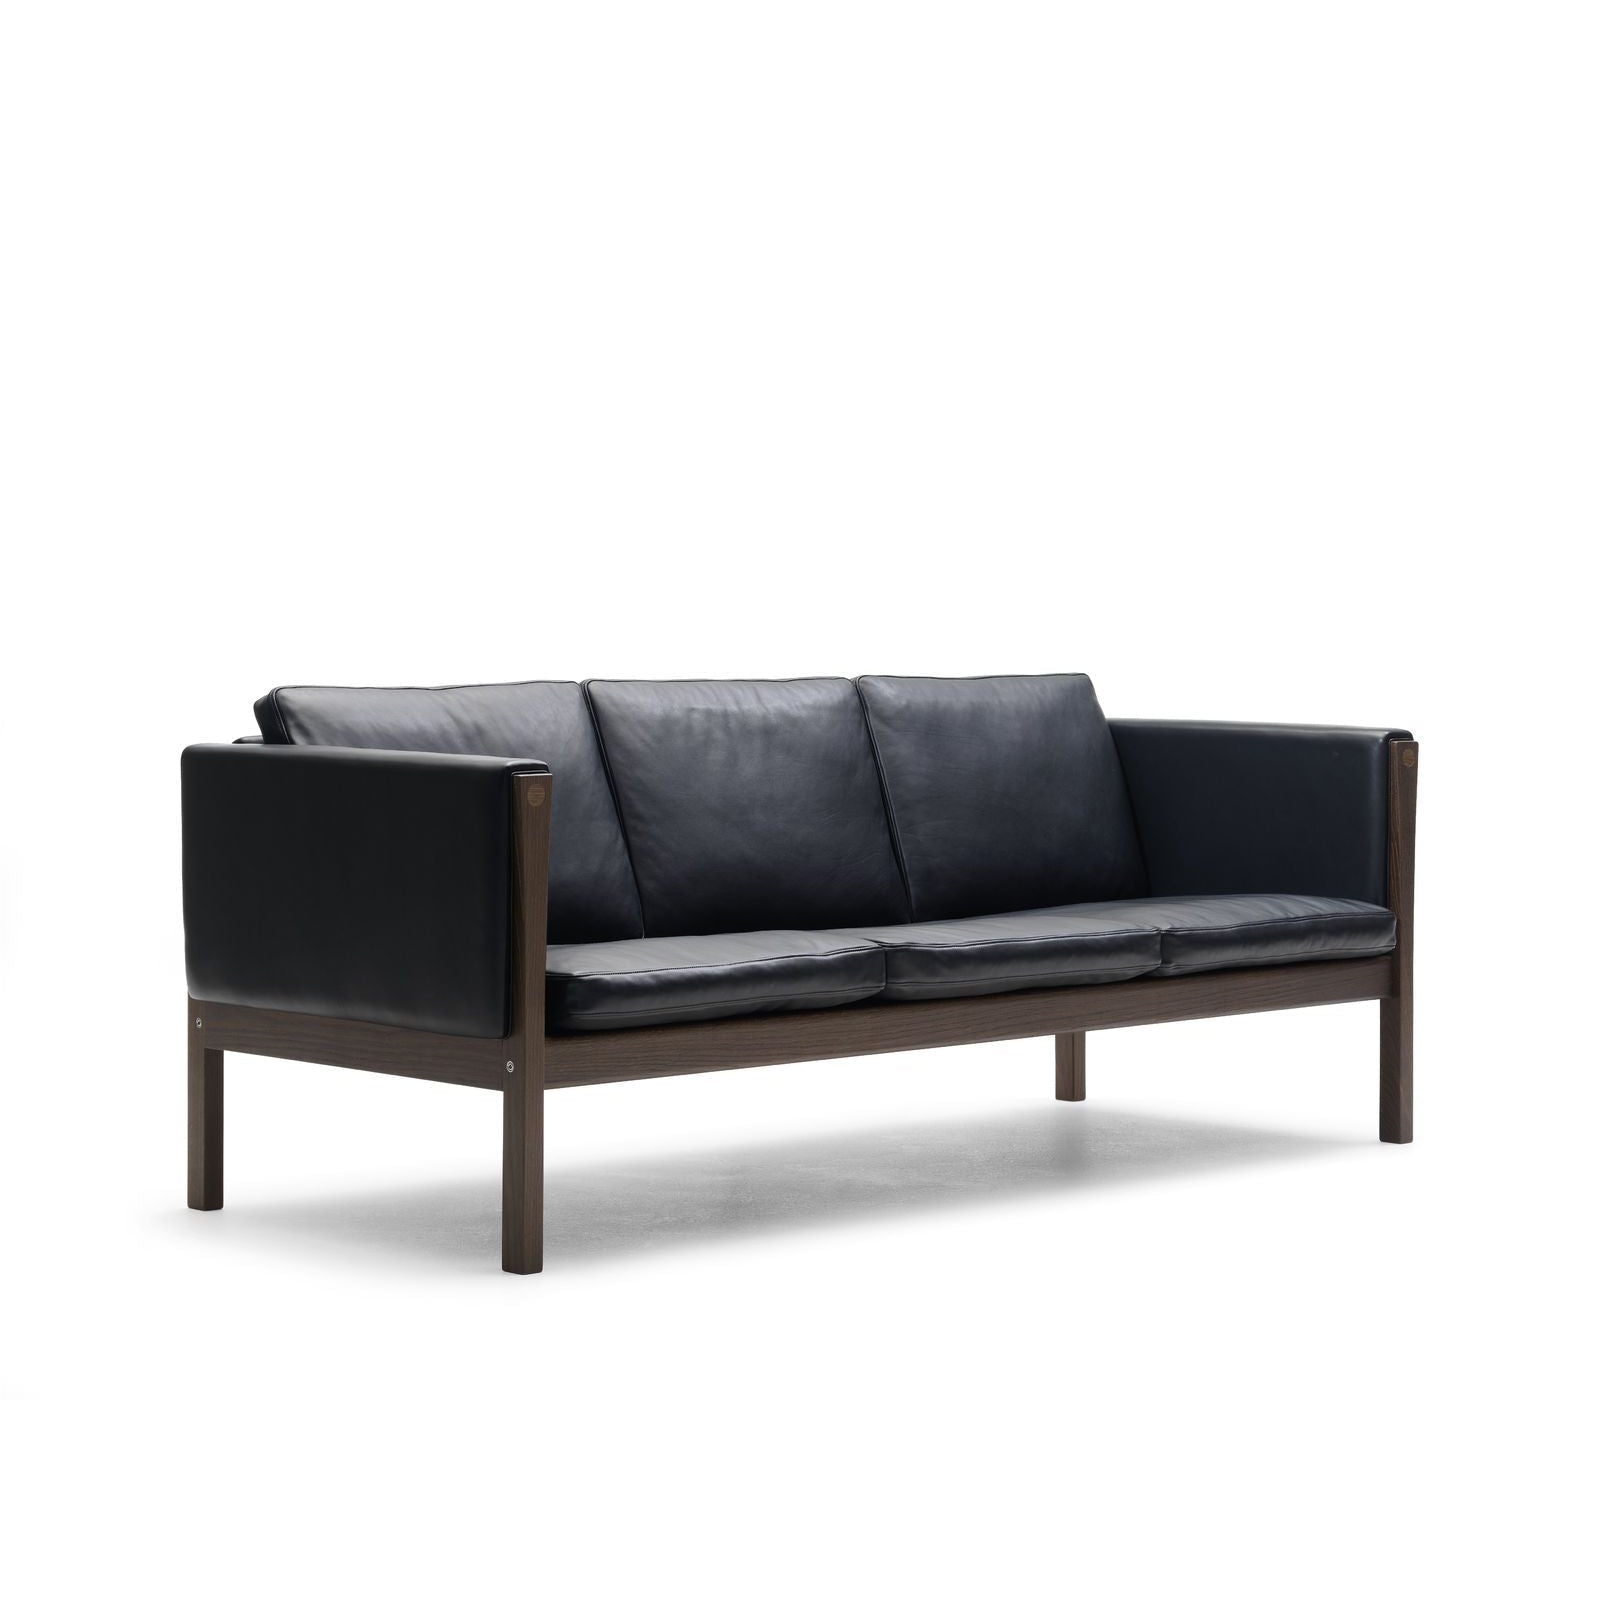 Carl Hansen CH163 divano, noce oliata/pelle nera